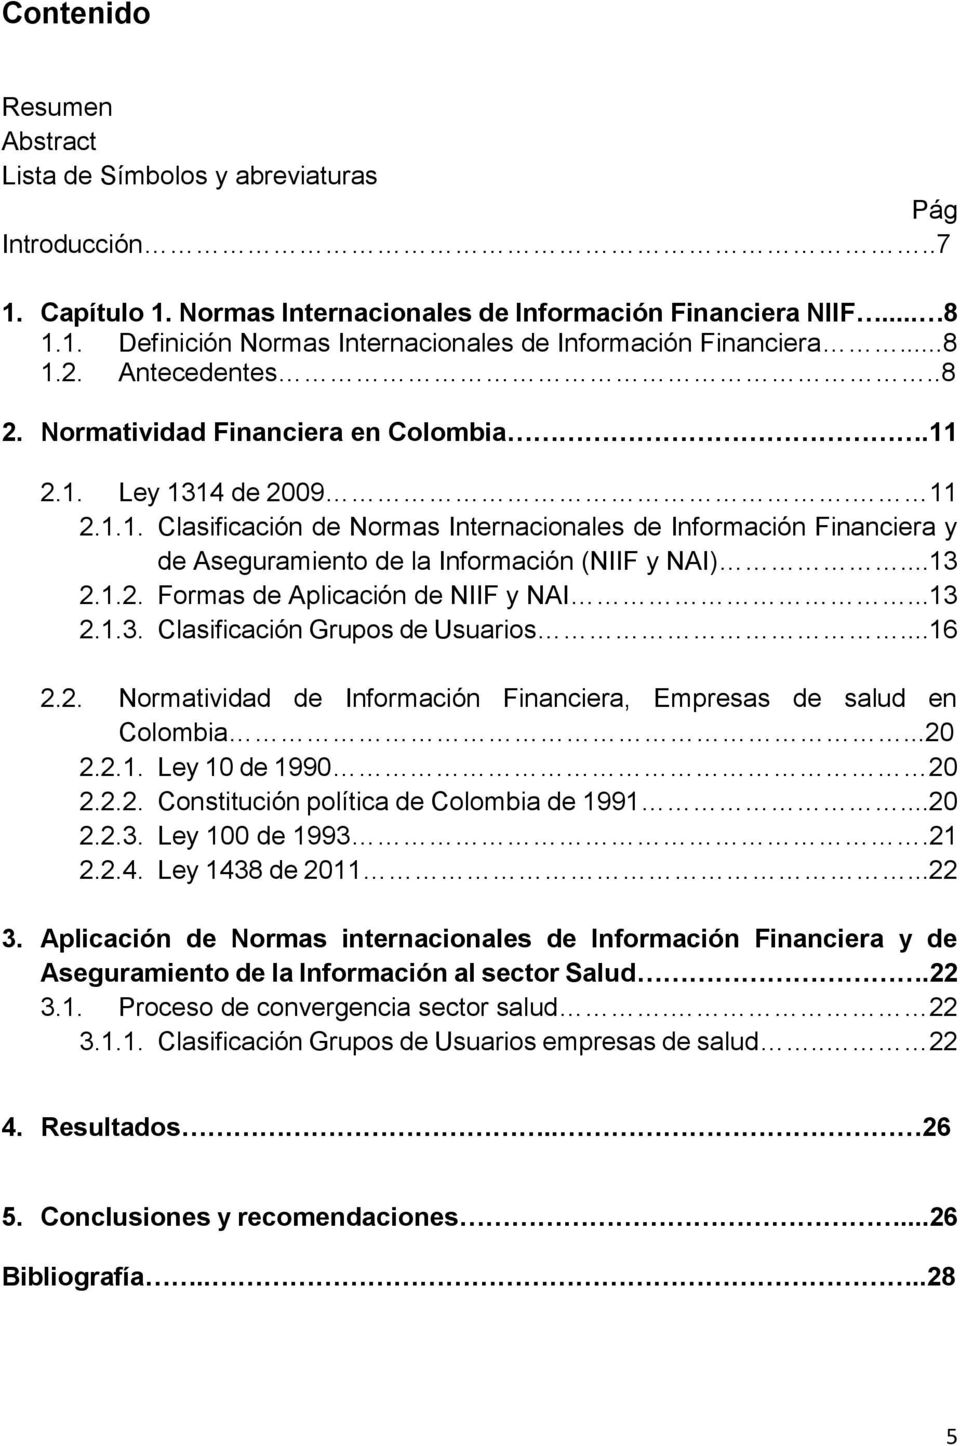 ..13 2.1.2. Formas de Aplicación de NIIF y NAI...13 2.1.3. Clasificación Grupos de Usuarios...16 2.2. Normatividad de Información Financiera, Empresas de salud en Colombia...20 2.2.1. Ley 10 de 1990 20 2.